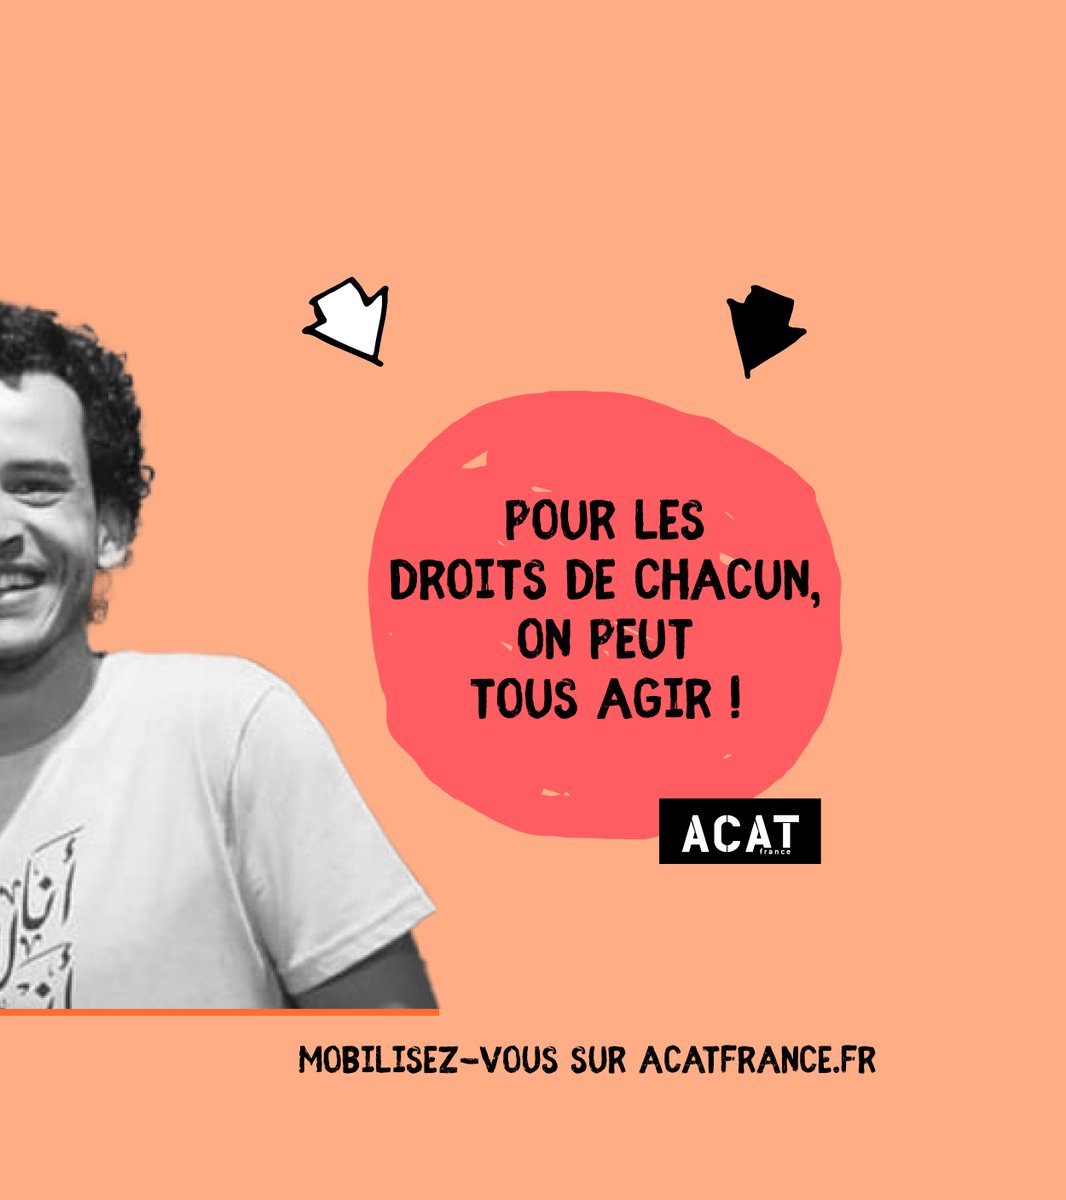 ACAT_France tweet picture